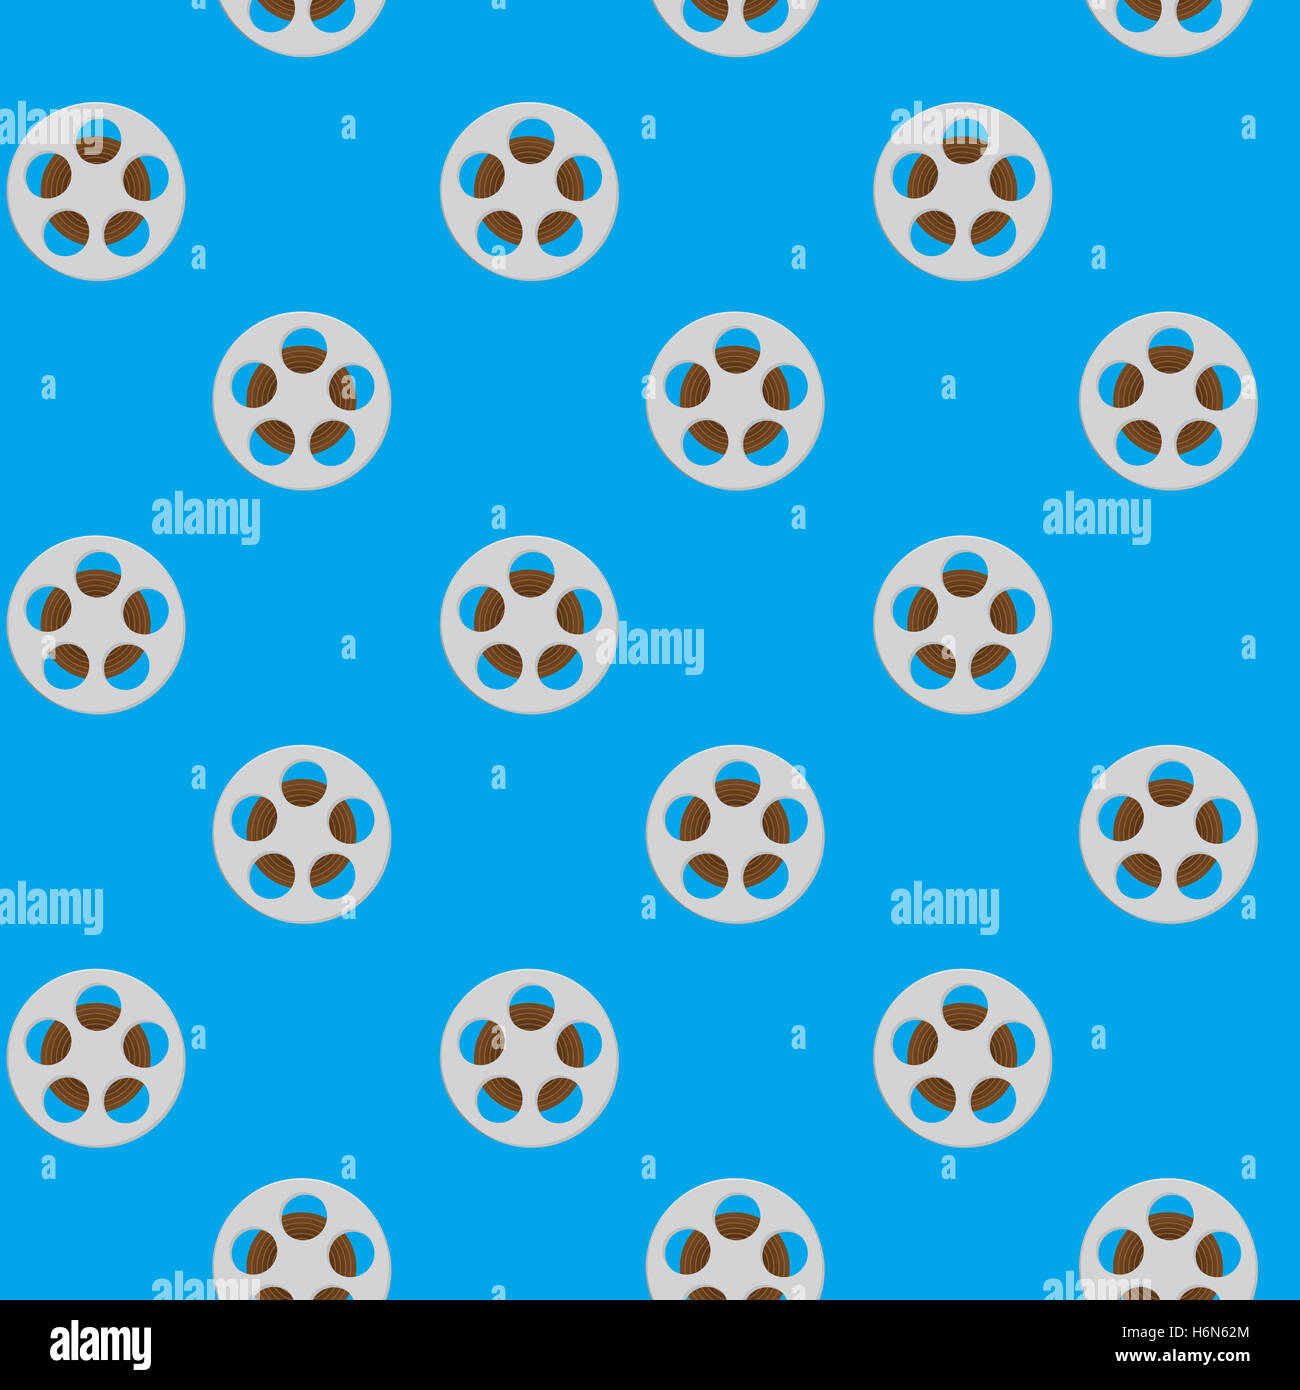 Spool reel filmstrip seamless pattern. Movie reel, cinema and slot